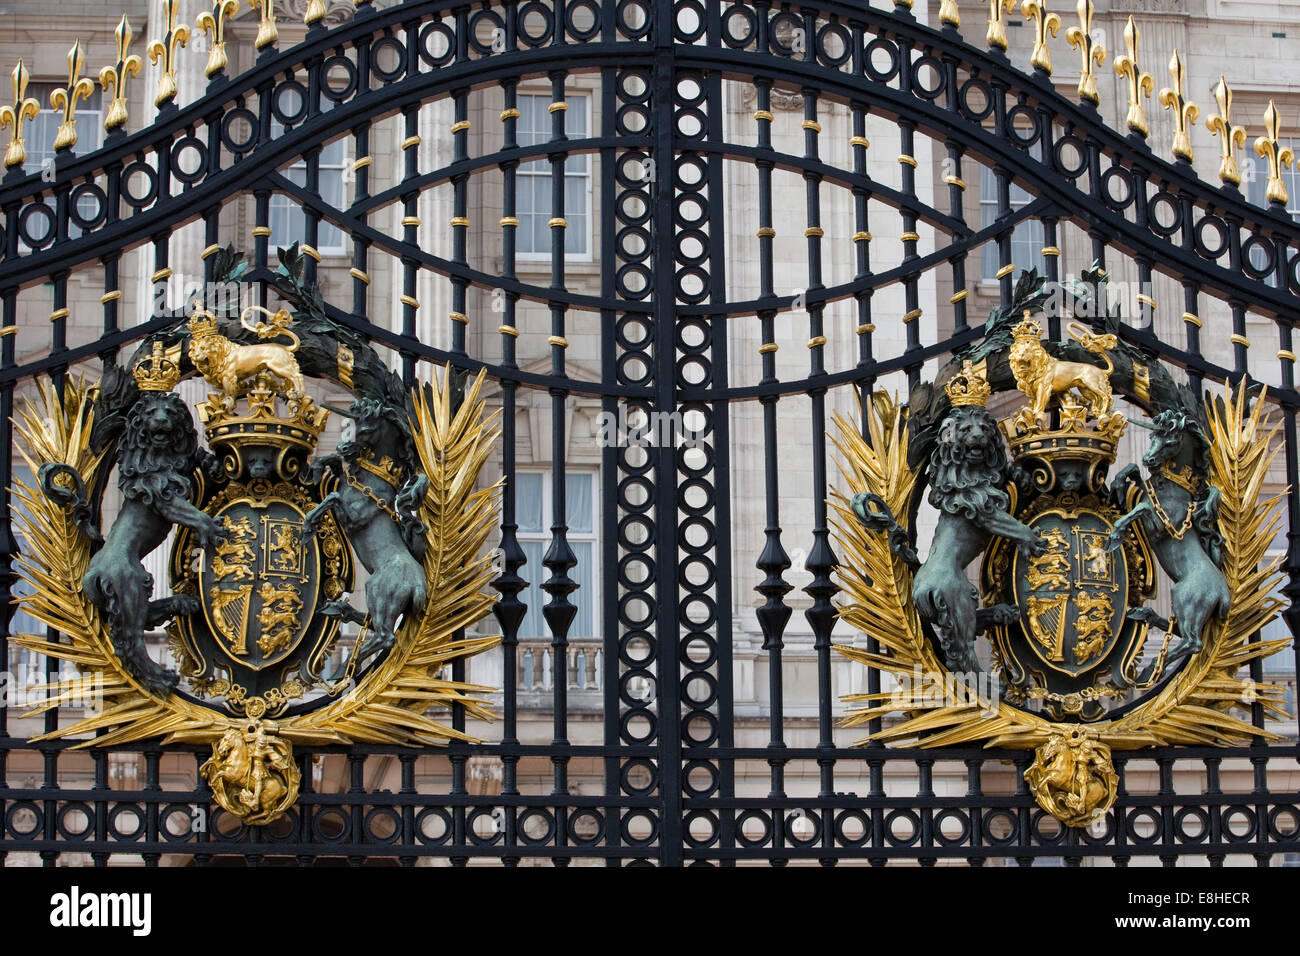 Front gates at Buckingham Palace England Stock Photo